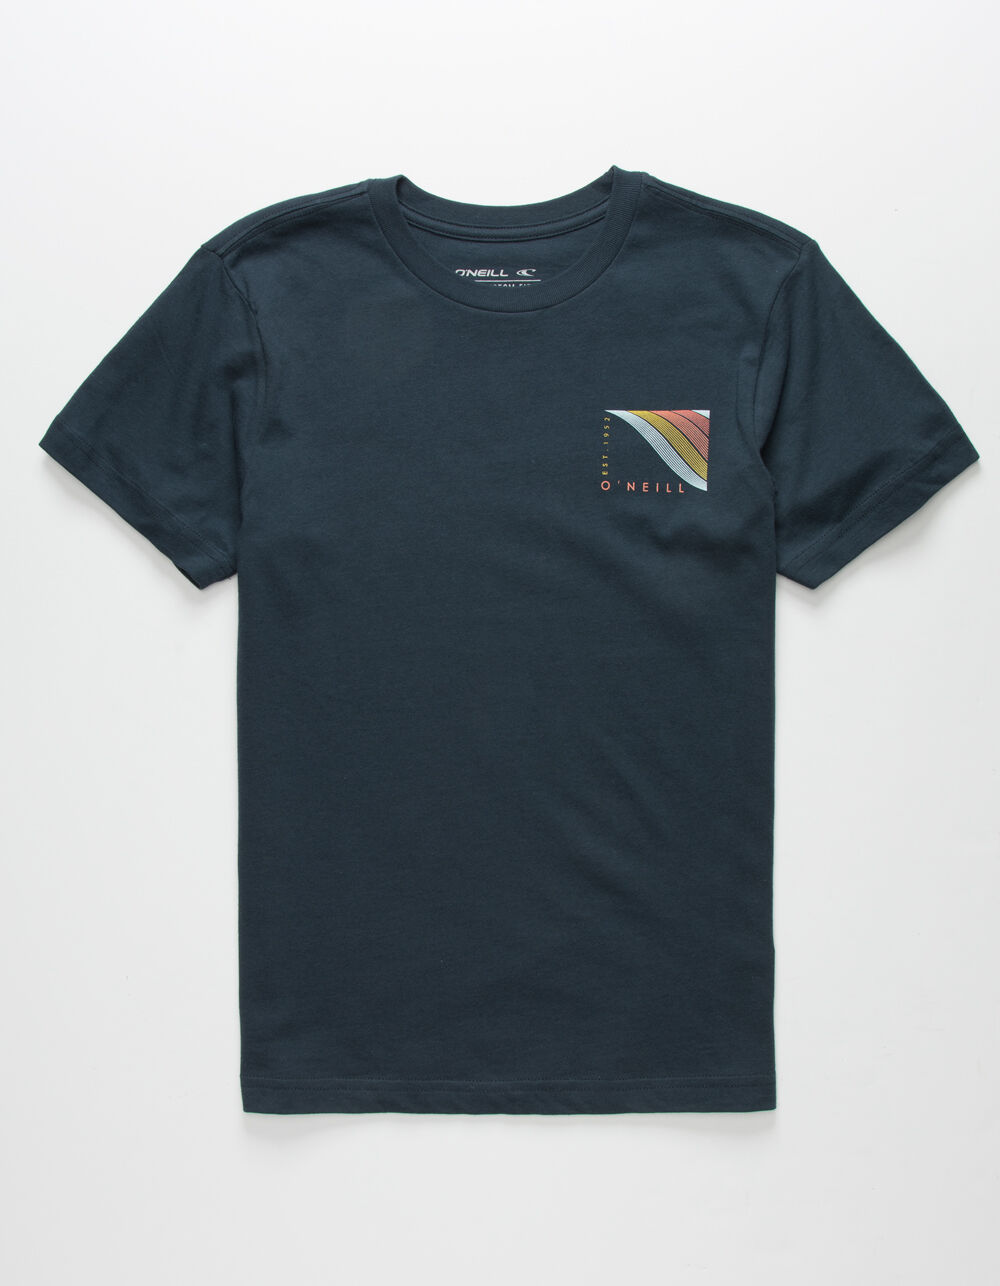 O'NEILL Sunburst Boys T-Shirt - NAVY | Tillys